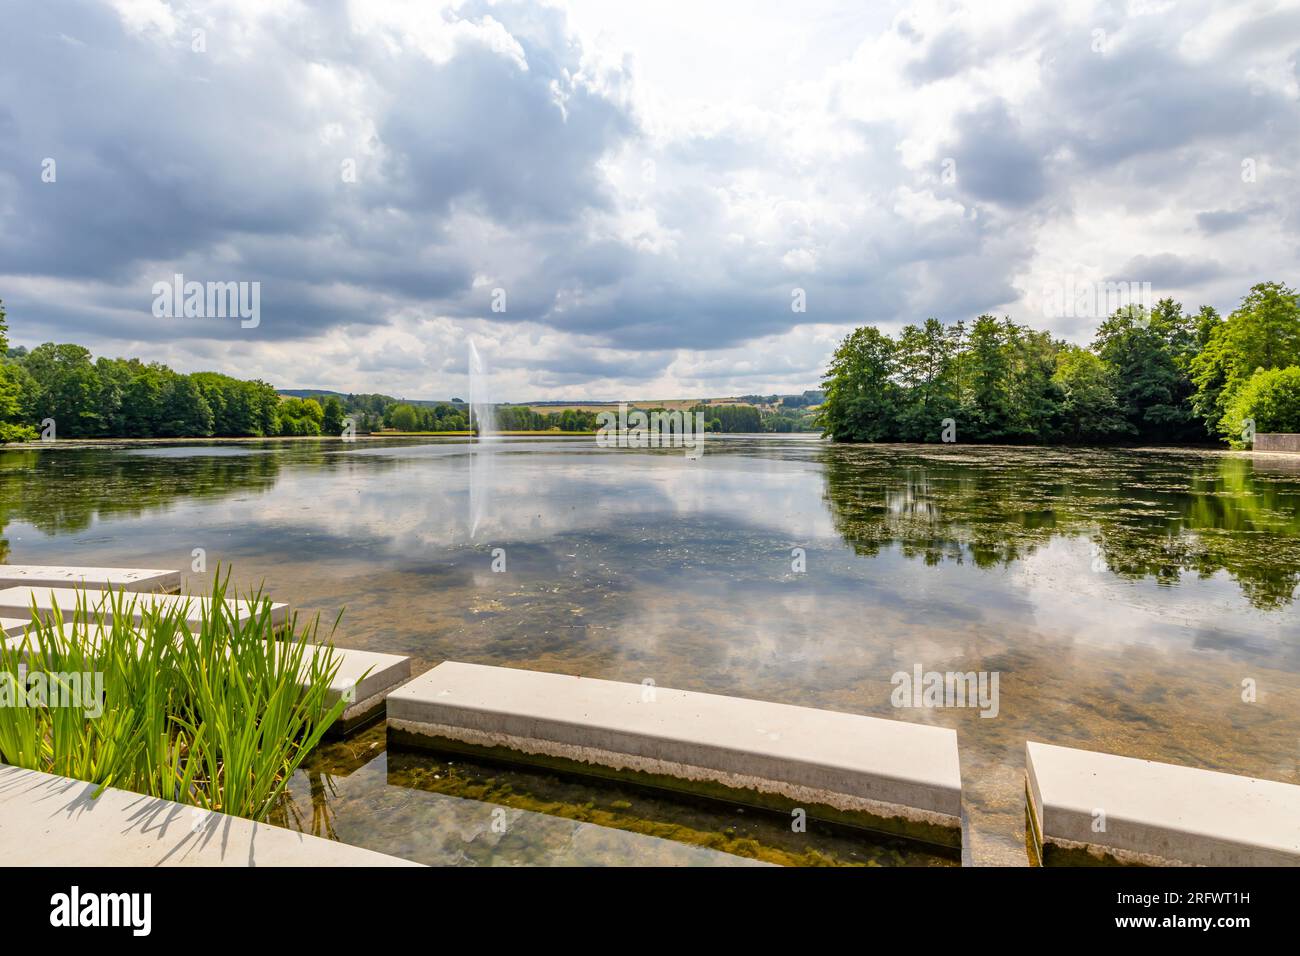 Lago di Echternach con piattaforme in cemento sulle rive, getto d'acqua che sgorga dalla fontana e alberi verdi sullo sfondo, riflesso sulla superficie dell'acqua, pennsylvania Foto Stock